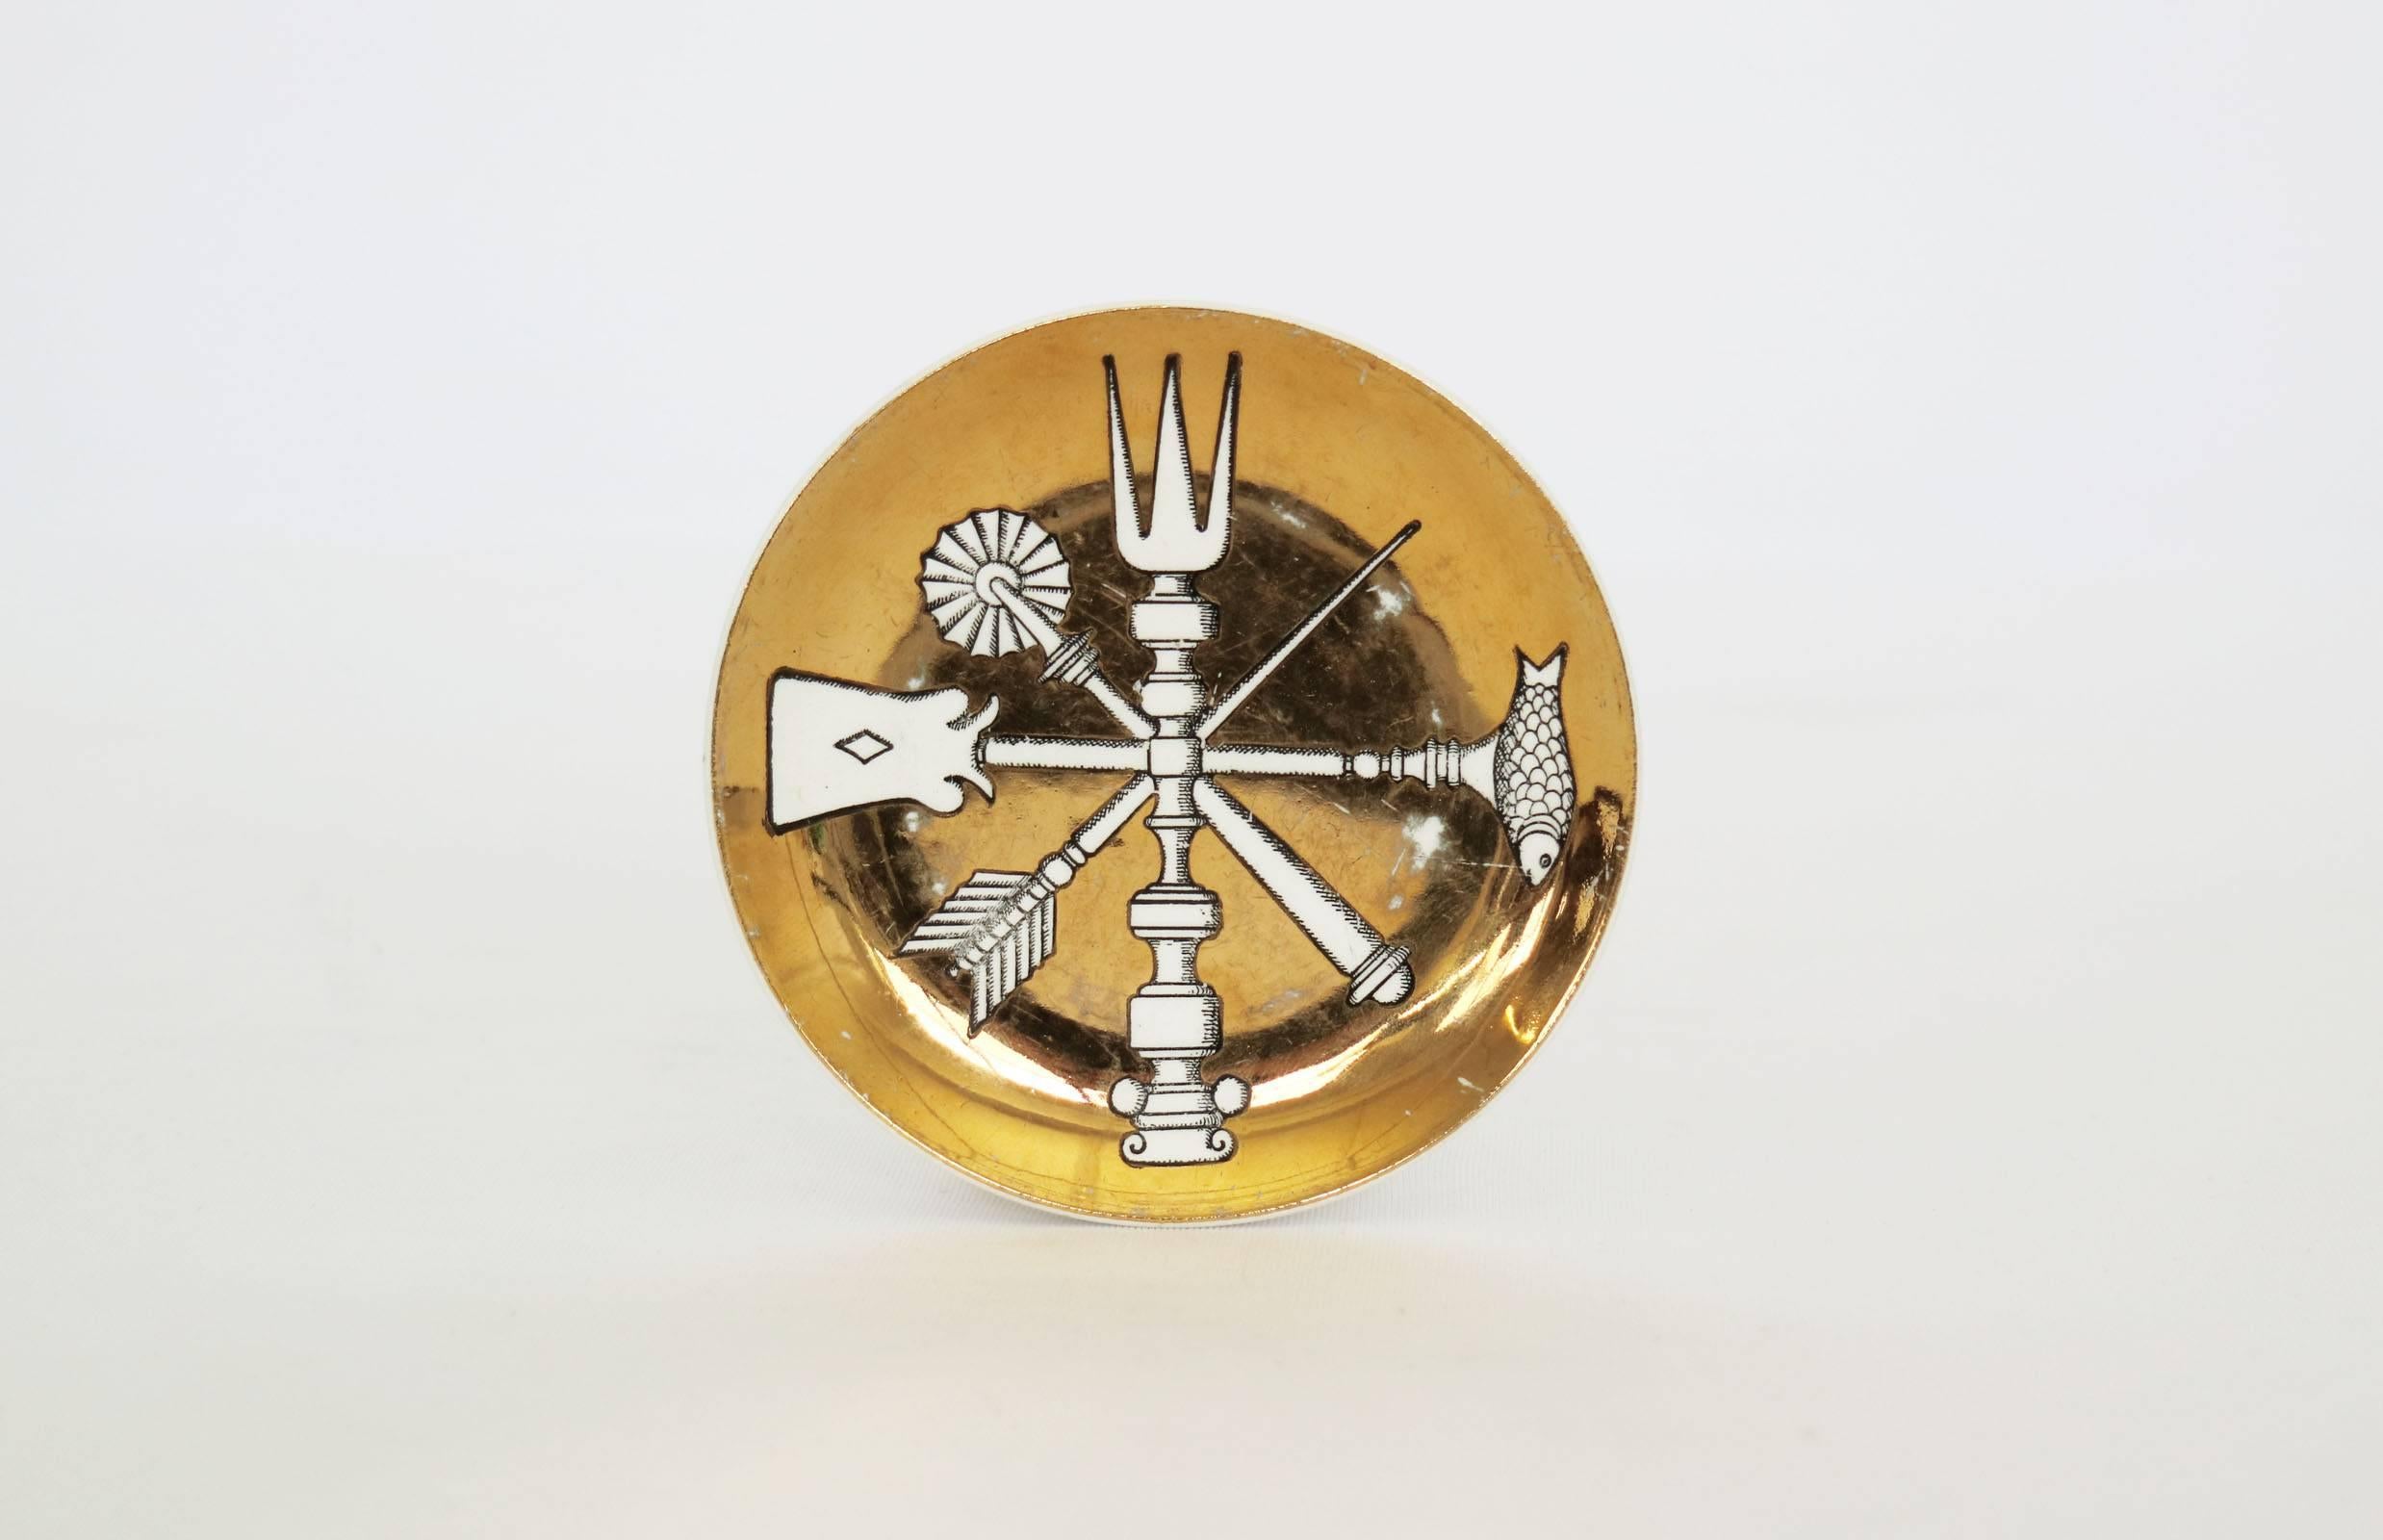 6 Gold Blatt Keramik Geschirr seltenes Design mit Original-Box.